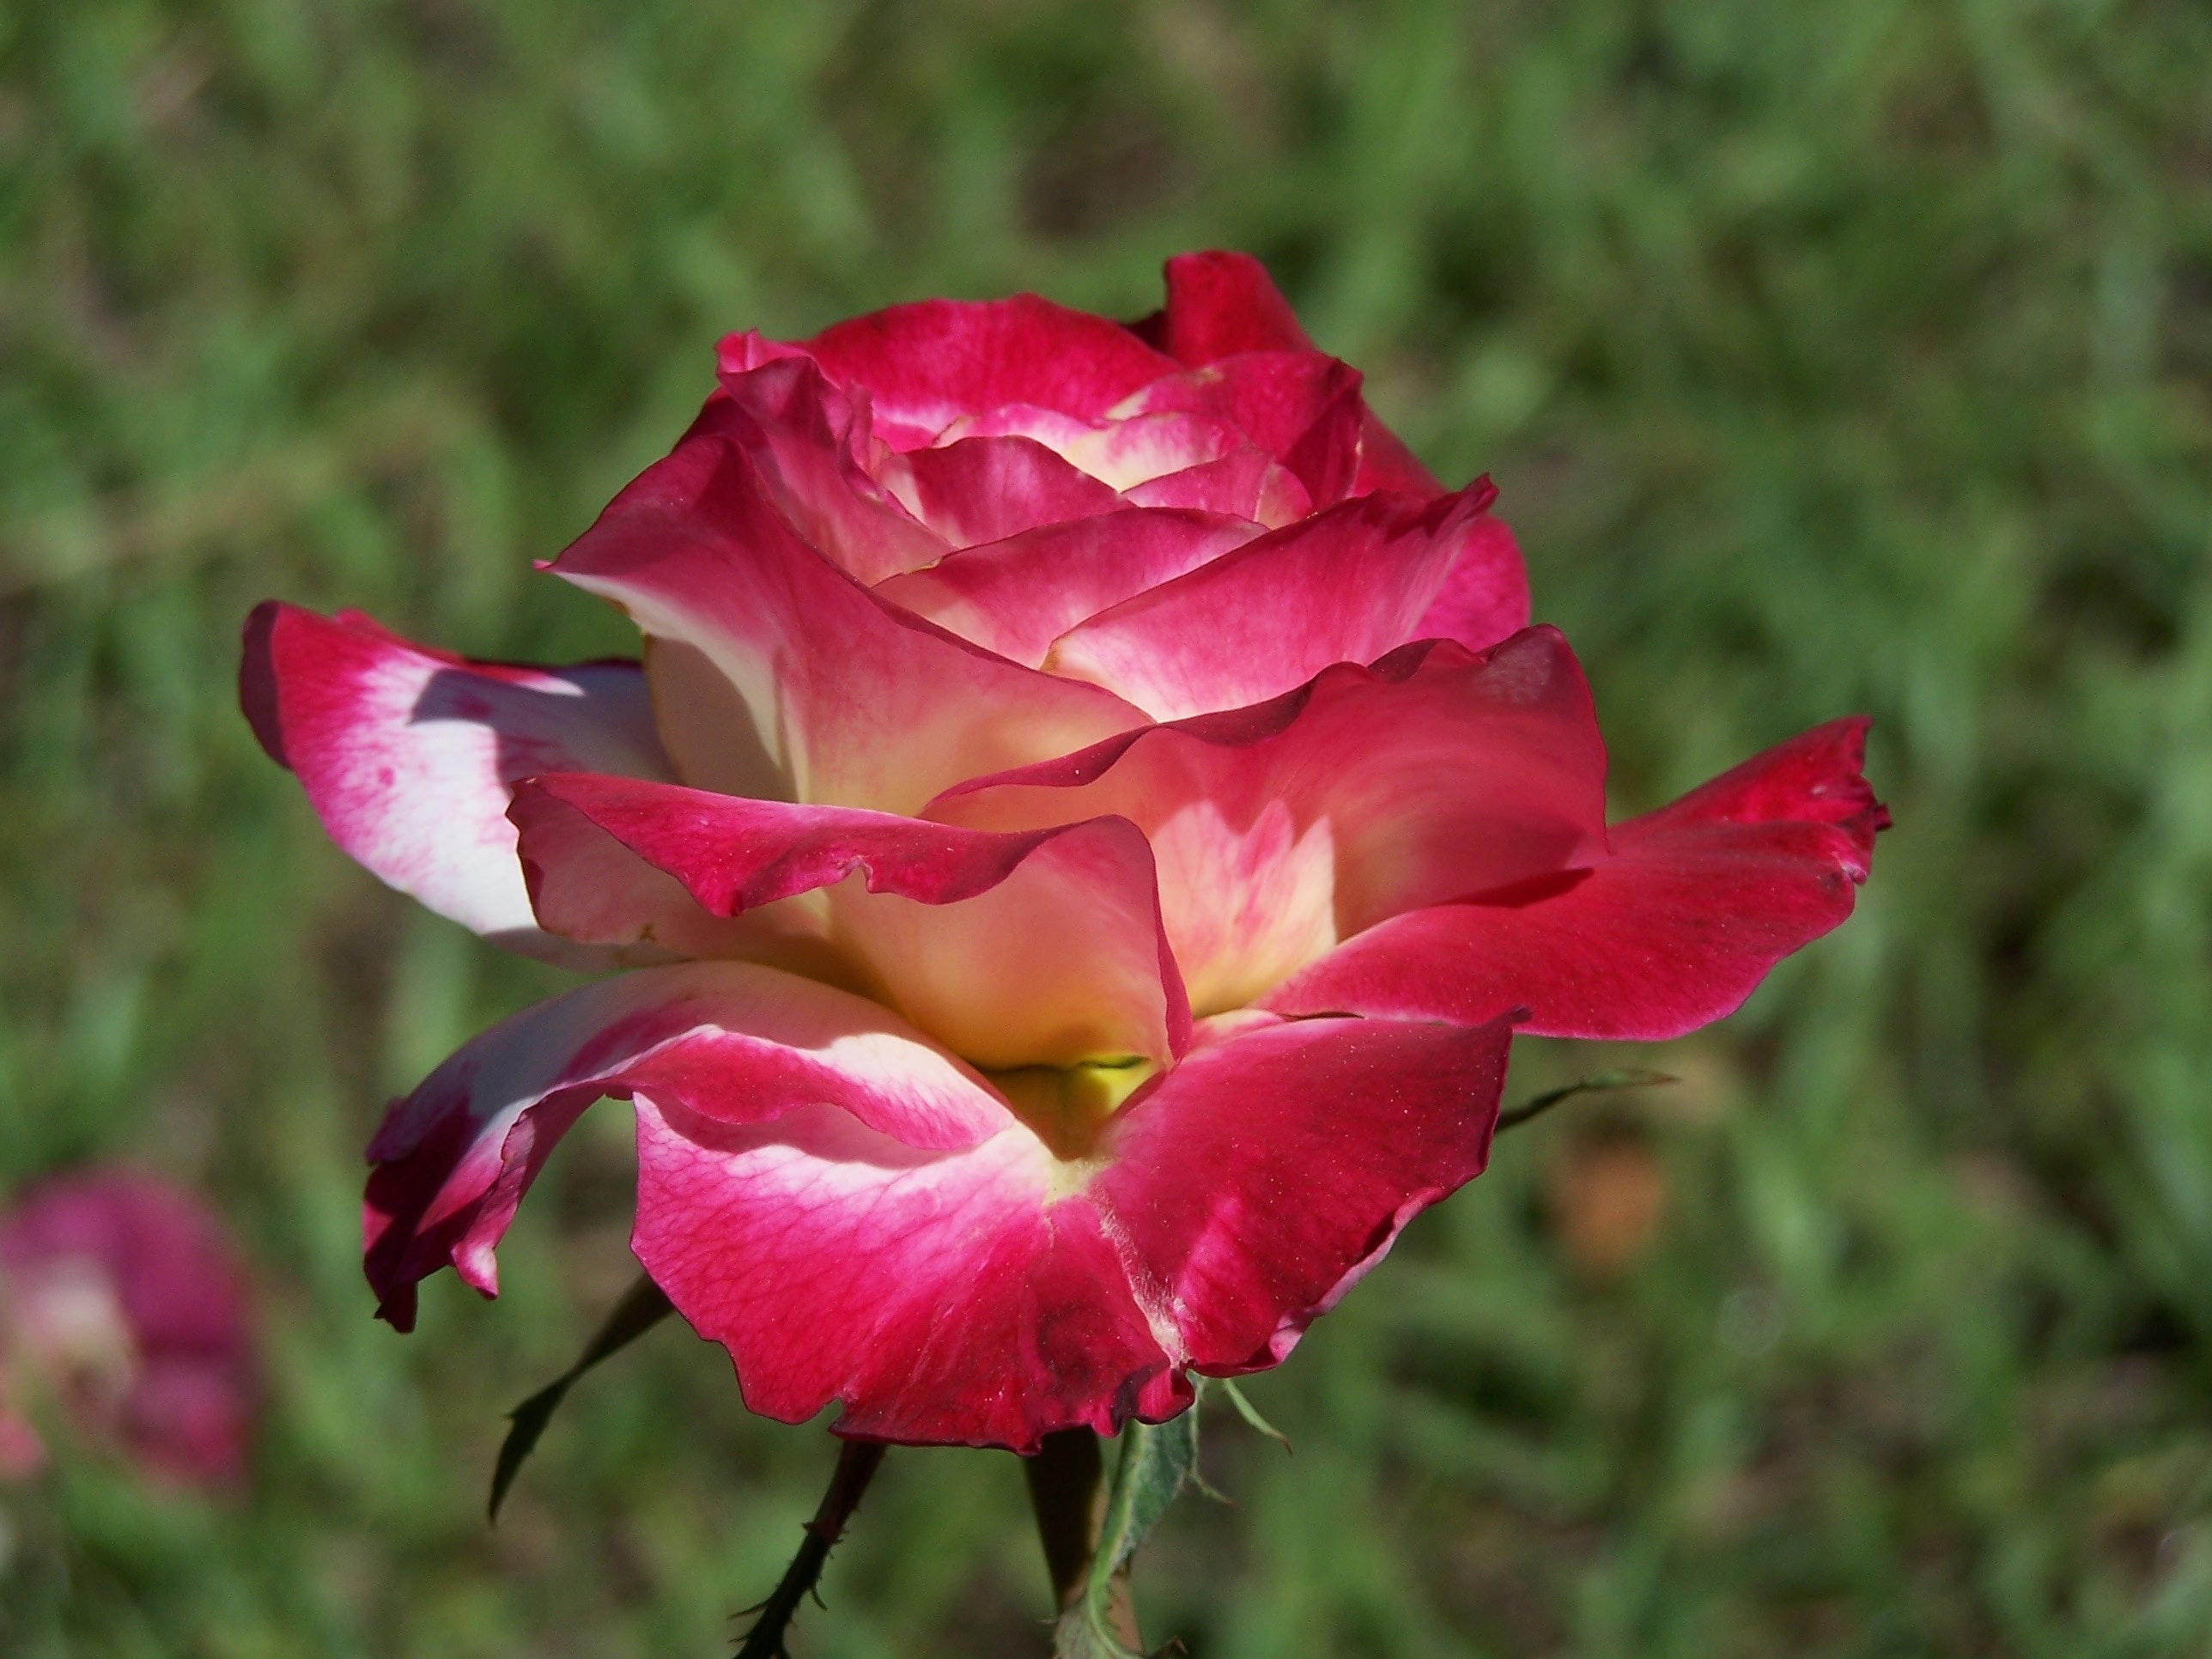 Red and white rose in tilt shift lens photo